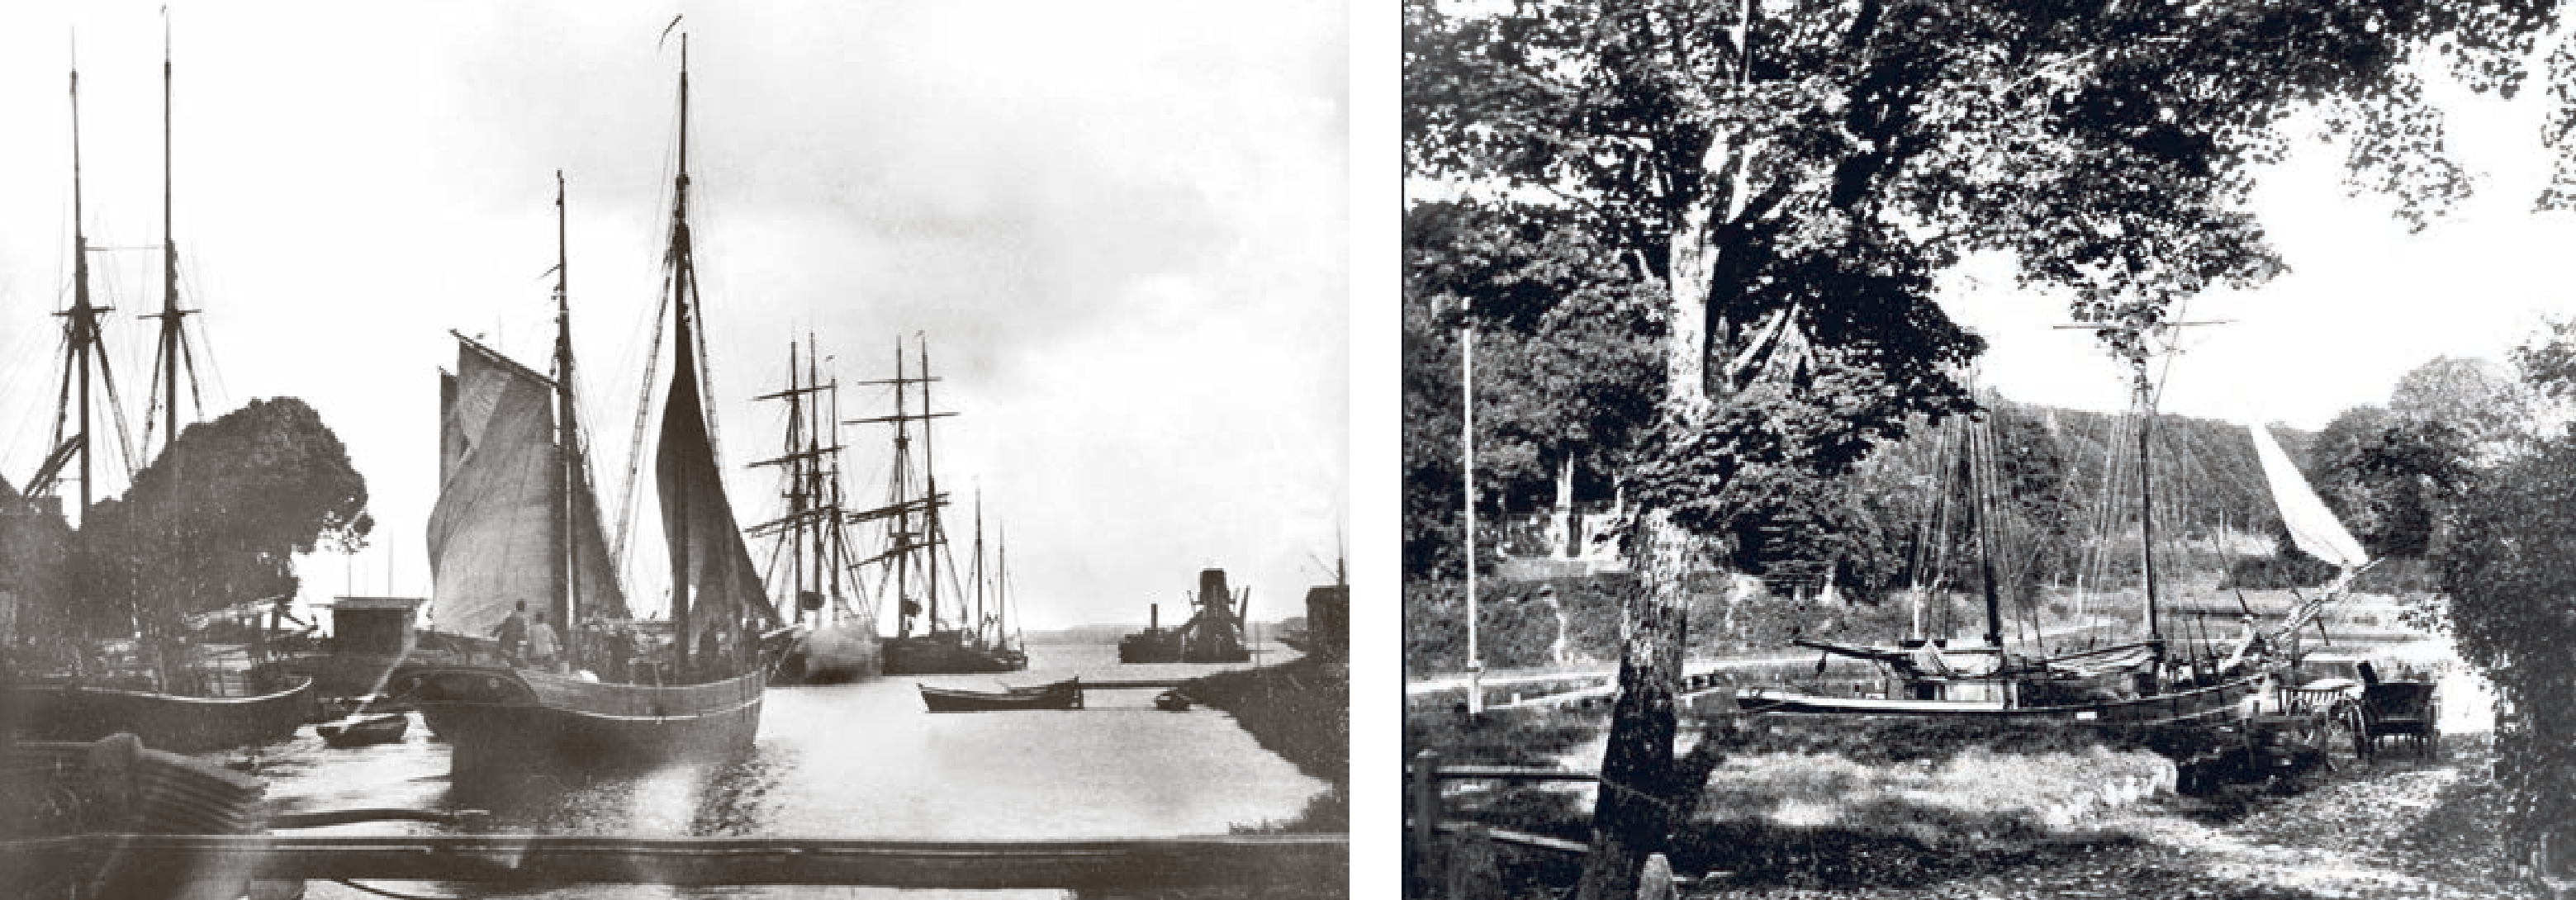 Das Foto links dürfte eine der ältesten Aufnahmen zum Eiderkanal sein. Es zeigt die Ausfahrt bei Holtenau um 1887. Das Foto rechts entstand an der Ladestelle Knoop. Die Idylle trügt. Die Arbeit der Decksmannschaften insbesondere beim Be- und Entladen war hart. SAMMLUNG DR. JÜRGEN ROHWEDER